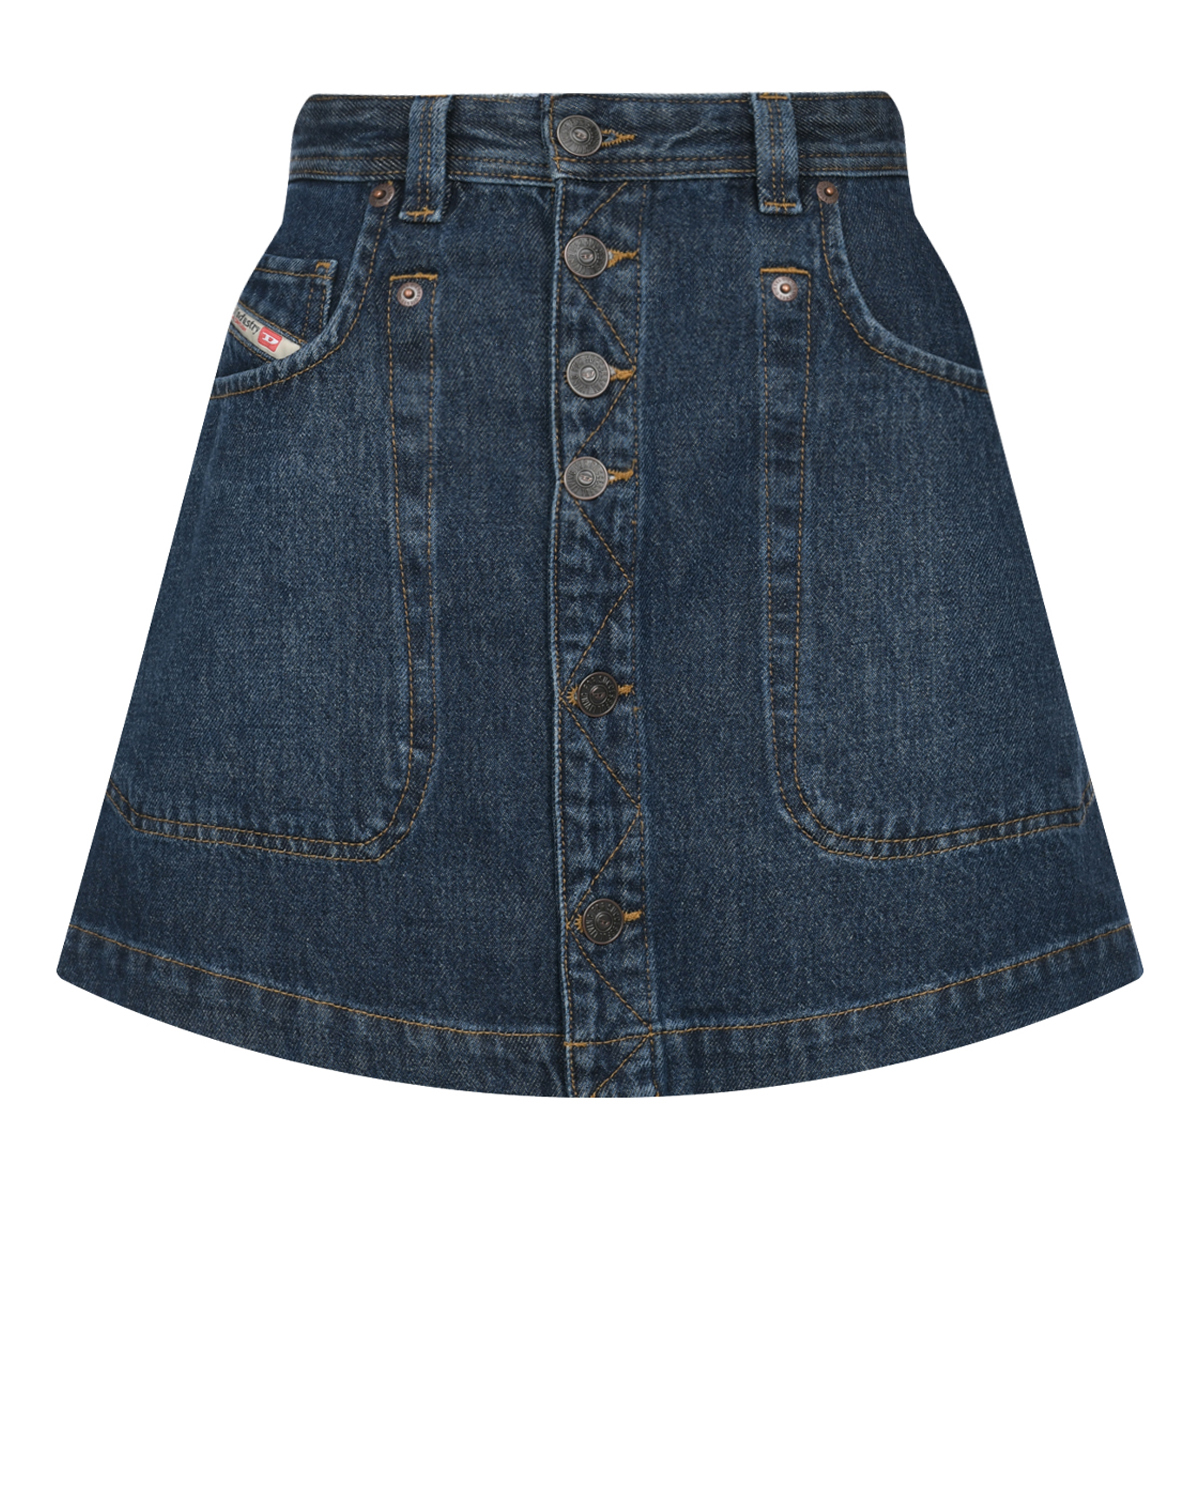 Синяя джинсовая юбка Diesel синяя юбка мини в складку с принтом в клетку для девочки gsk017549 9 10л 140